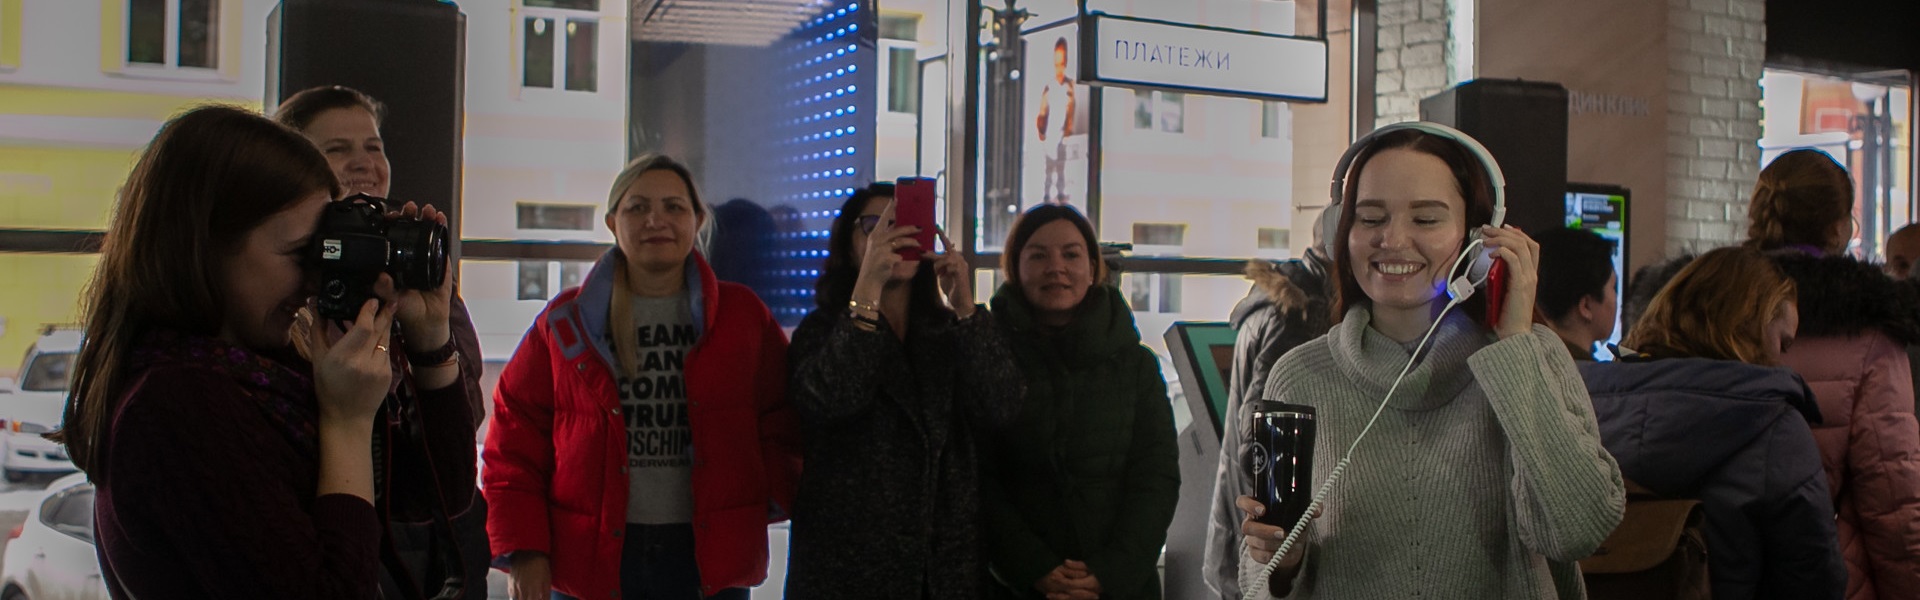 Digital во всем: в Иркутске открылся первый цифровой салон Tele2